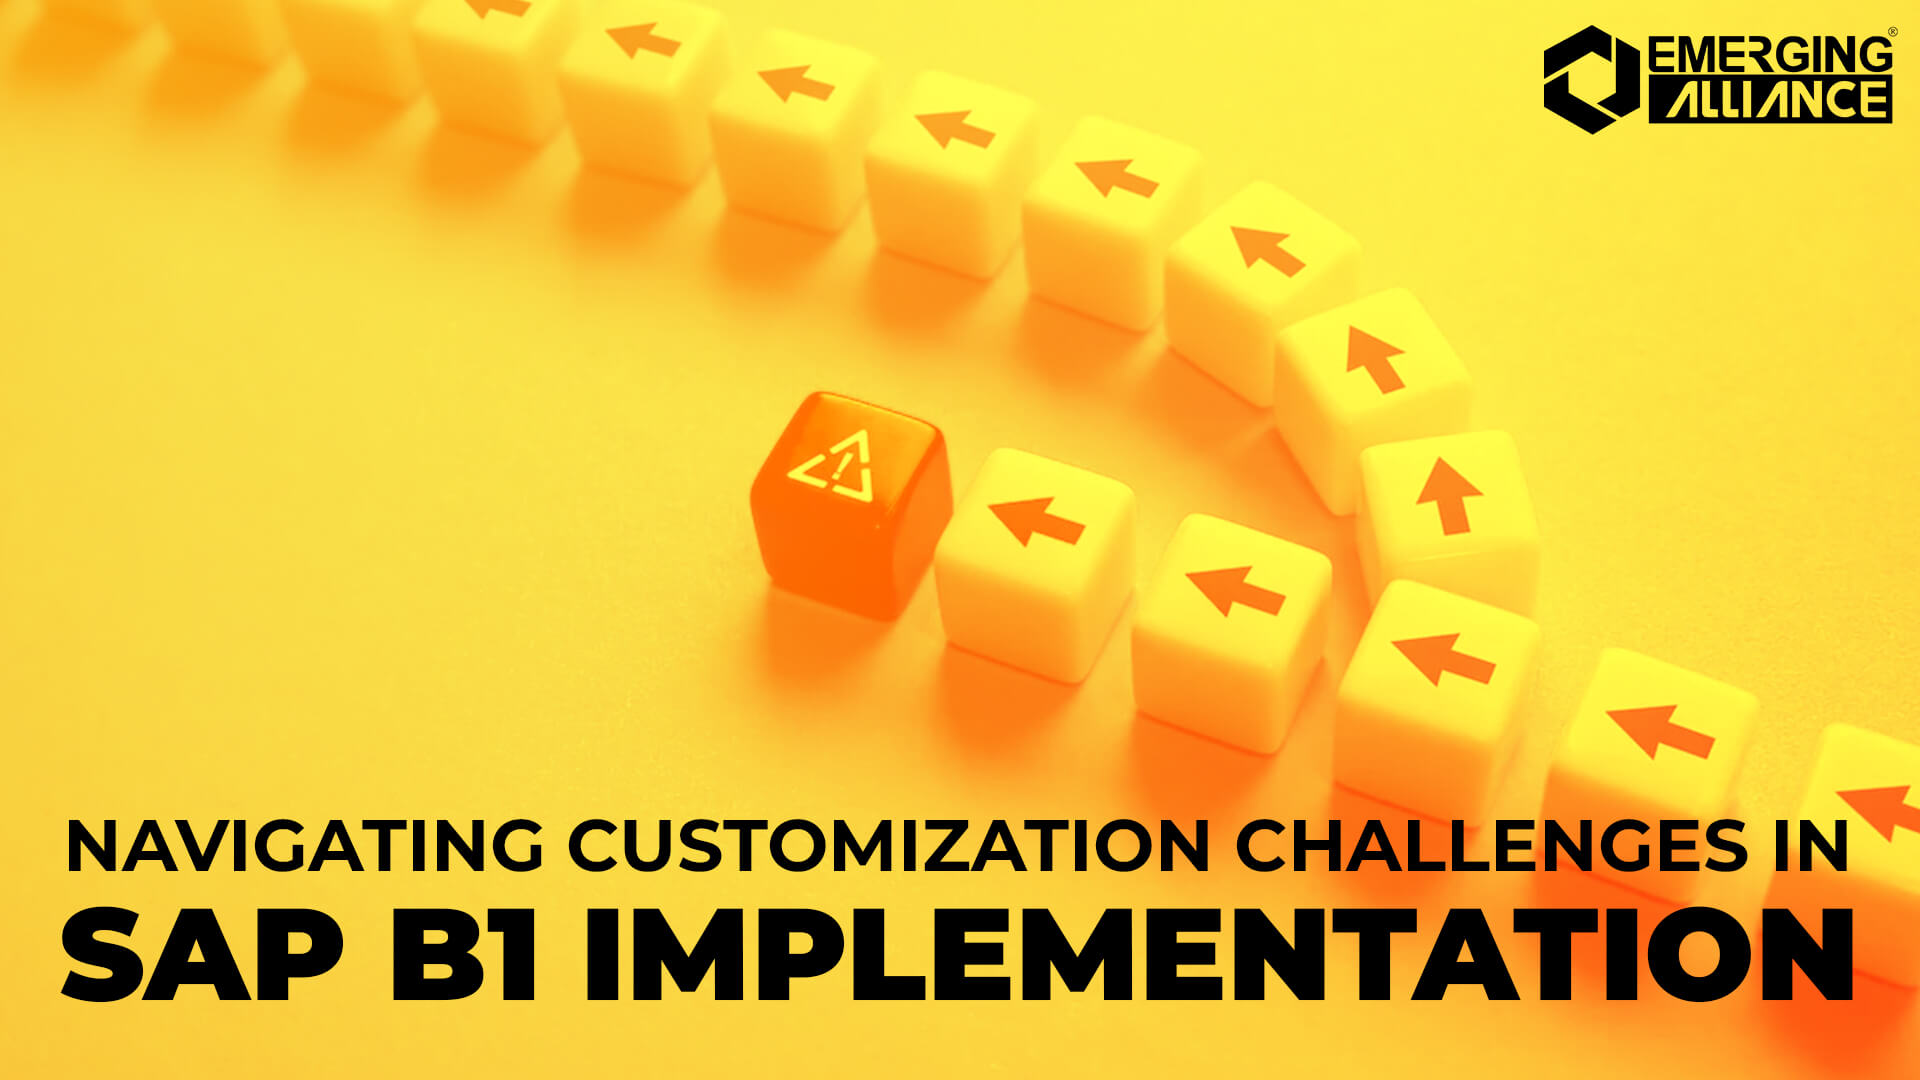 Customization Challenges in SAP B1